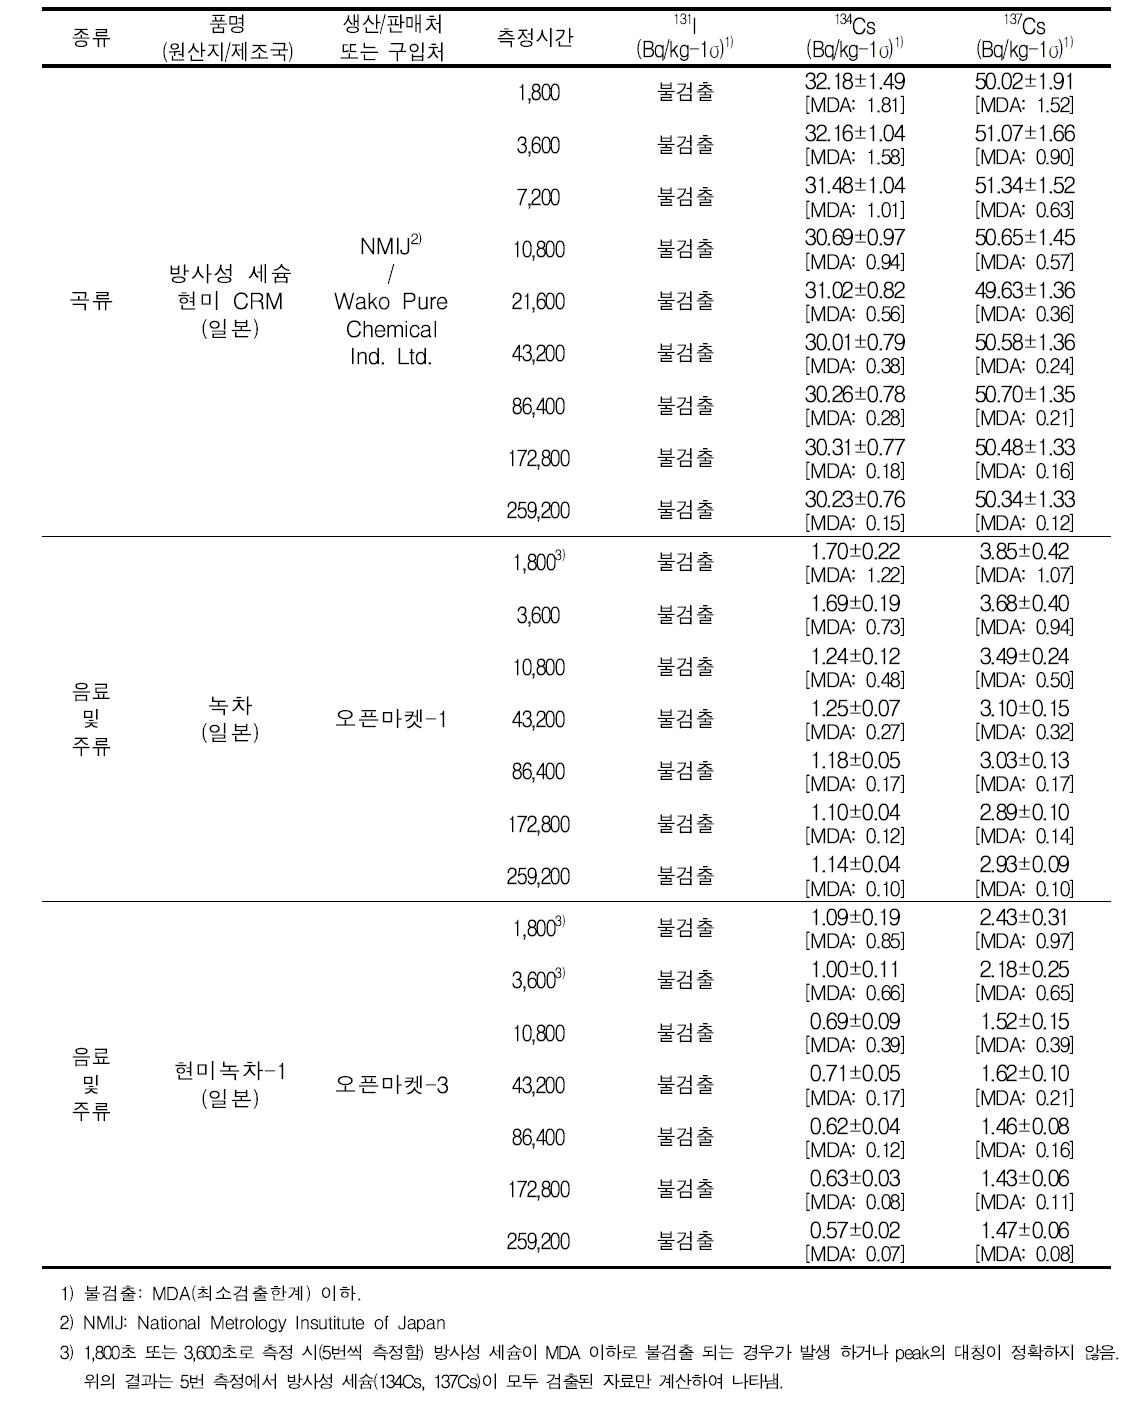 일본 현미 인증표준물질(CRM)(1개 시료) 및 일본산 차(茶)류(2개 시료) 시간별방사능 측정